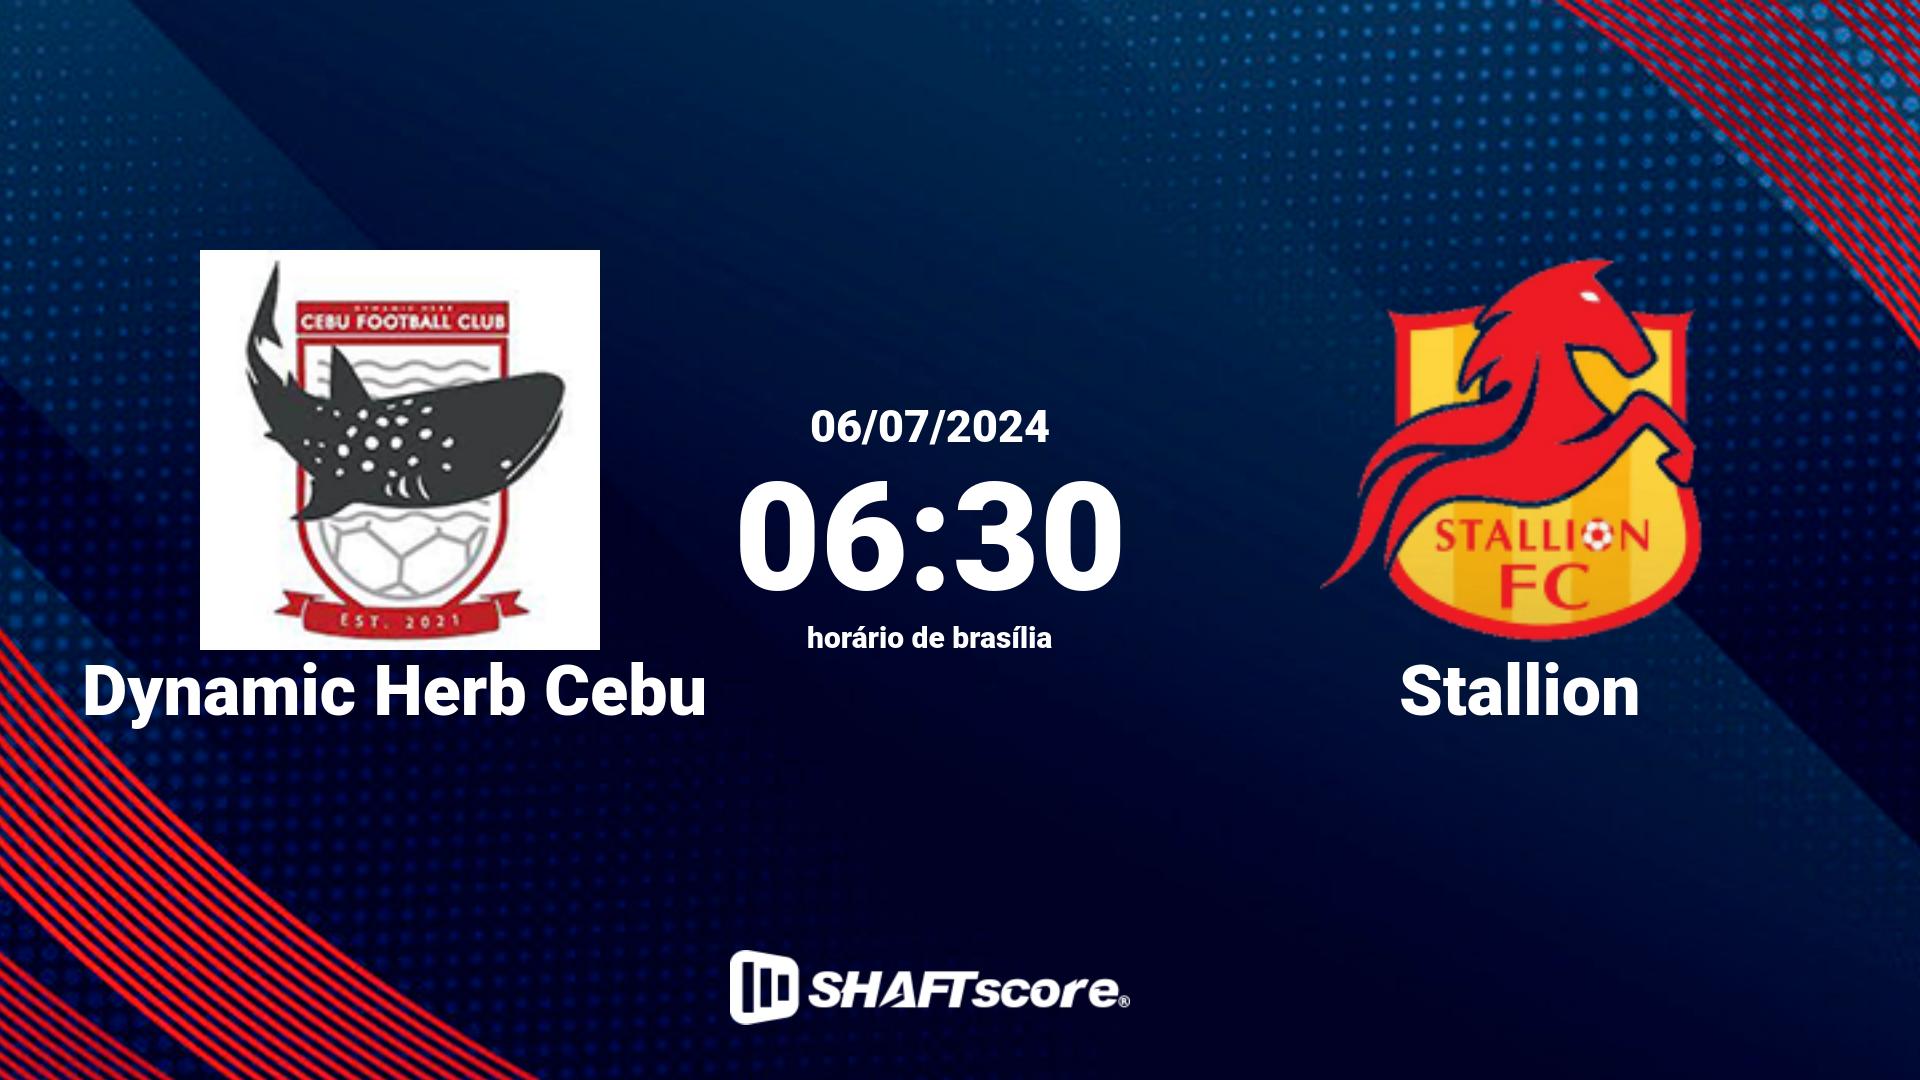 Estatísticas do jogo Dynamic Herb Cebu vs Stallion 06.07 06:30